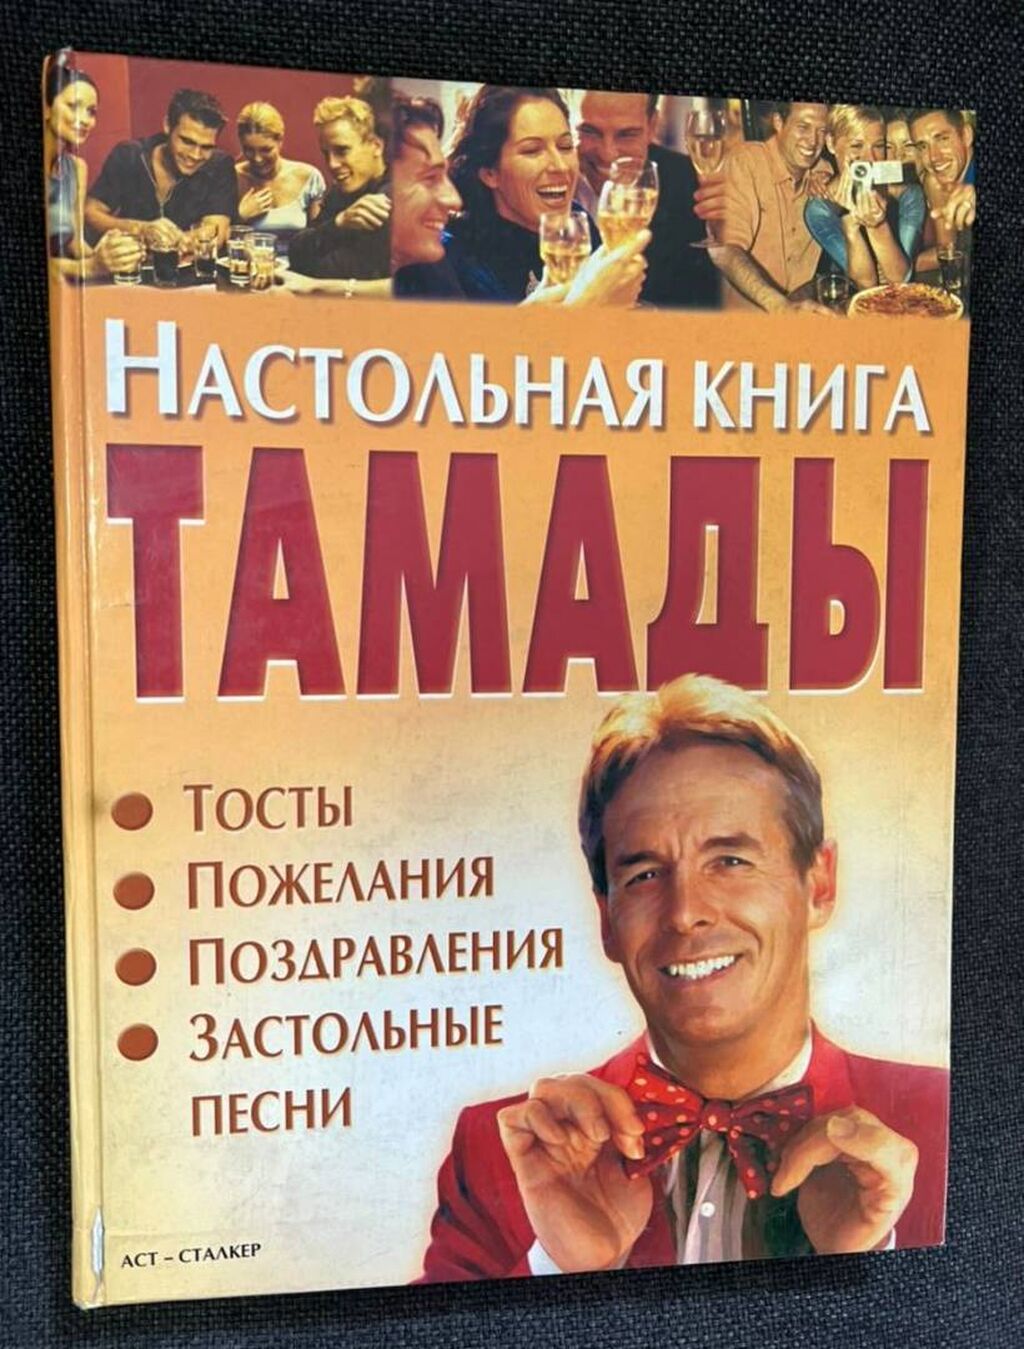 Азбука вязания, М. В. Максимова купить книга Україна